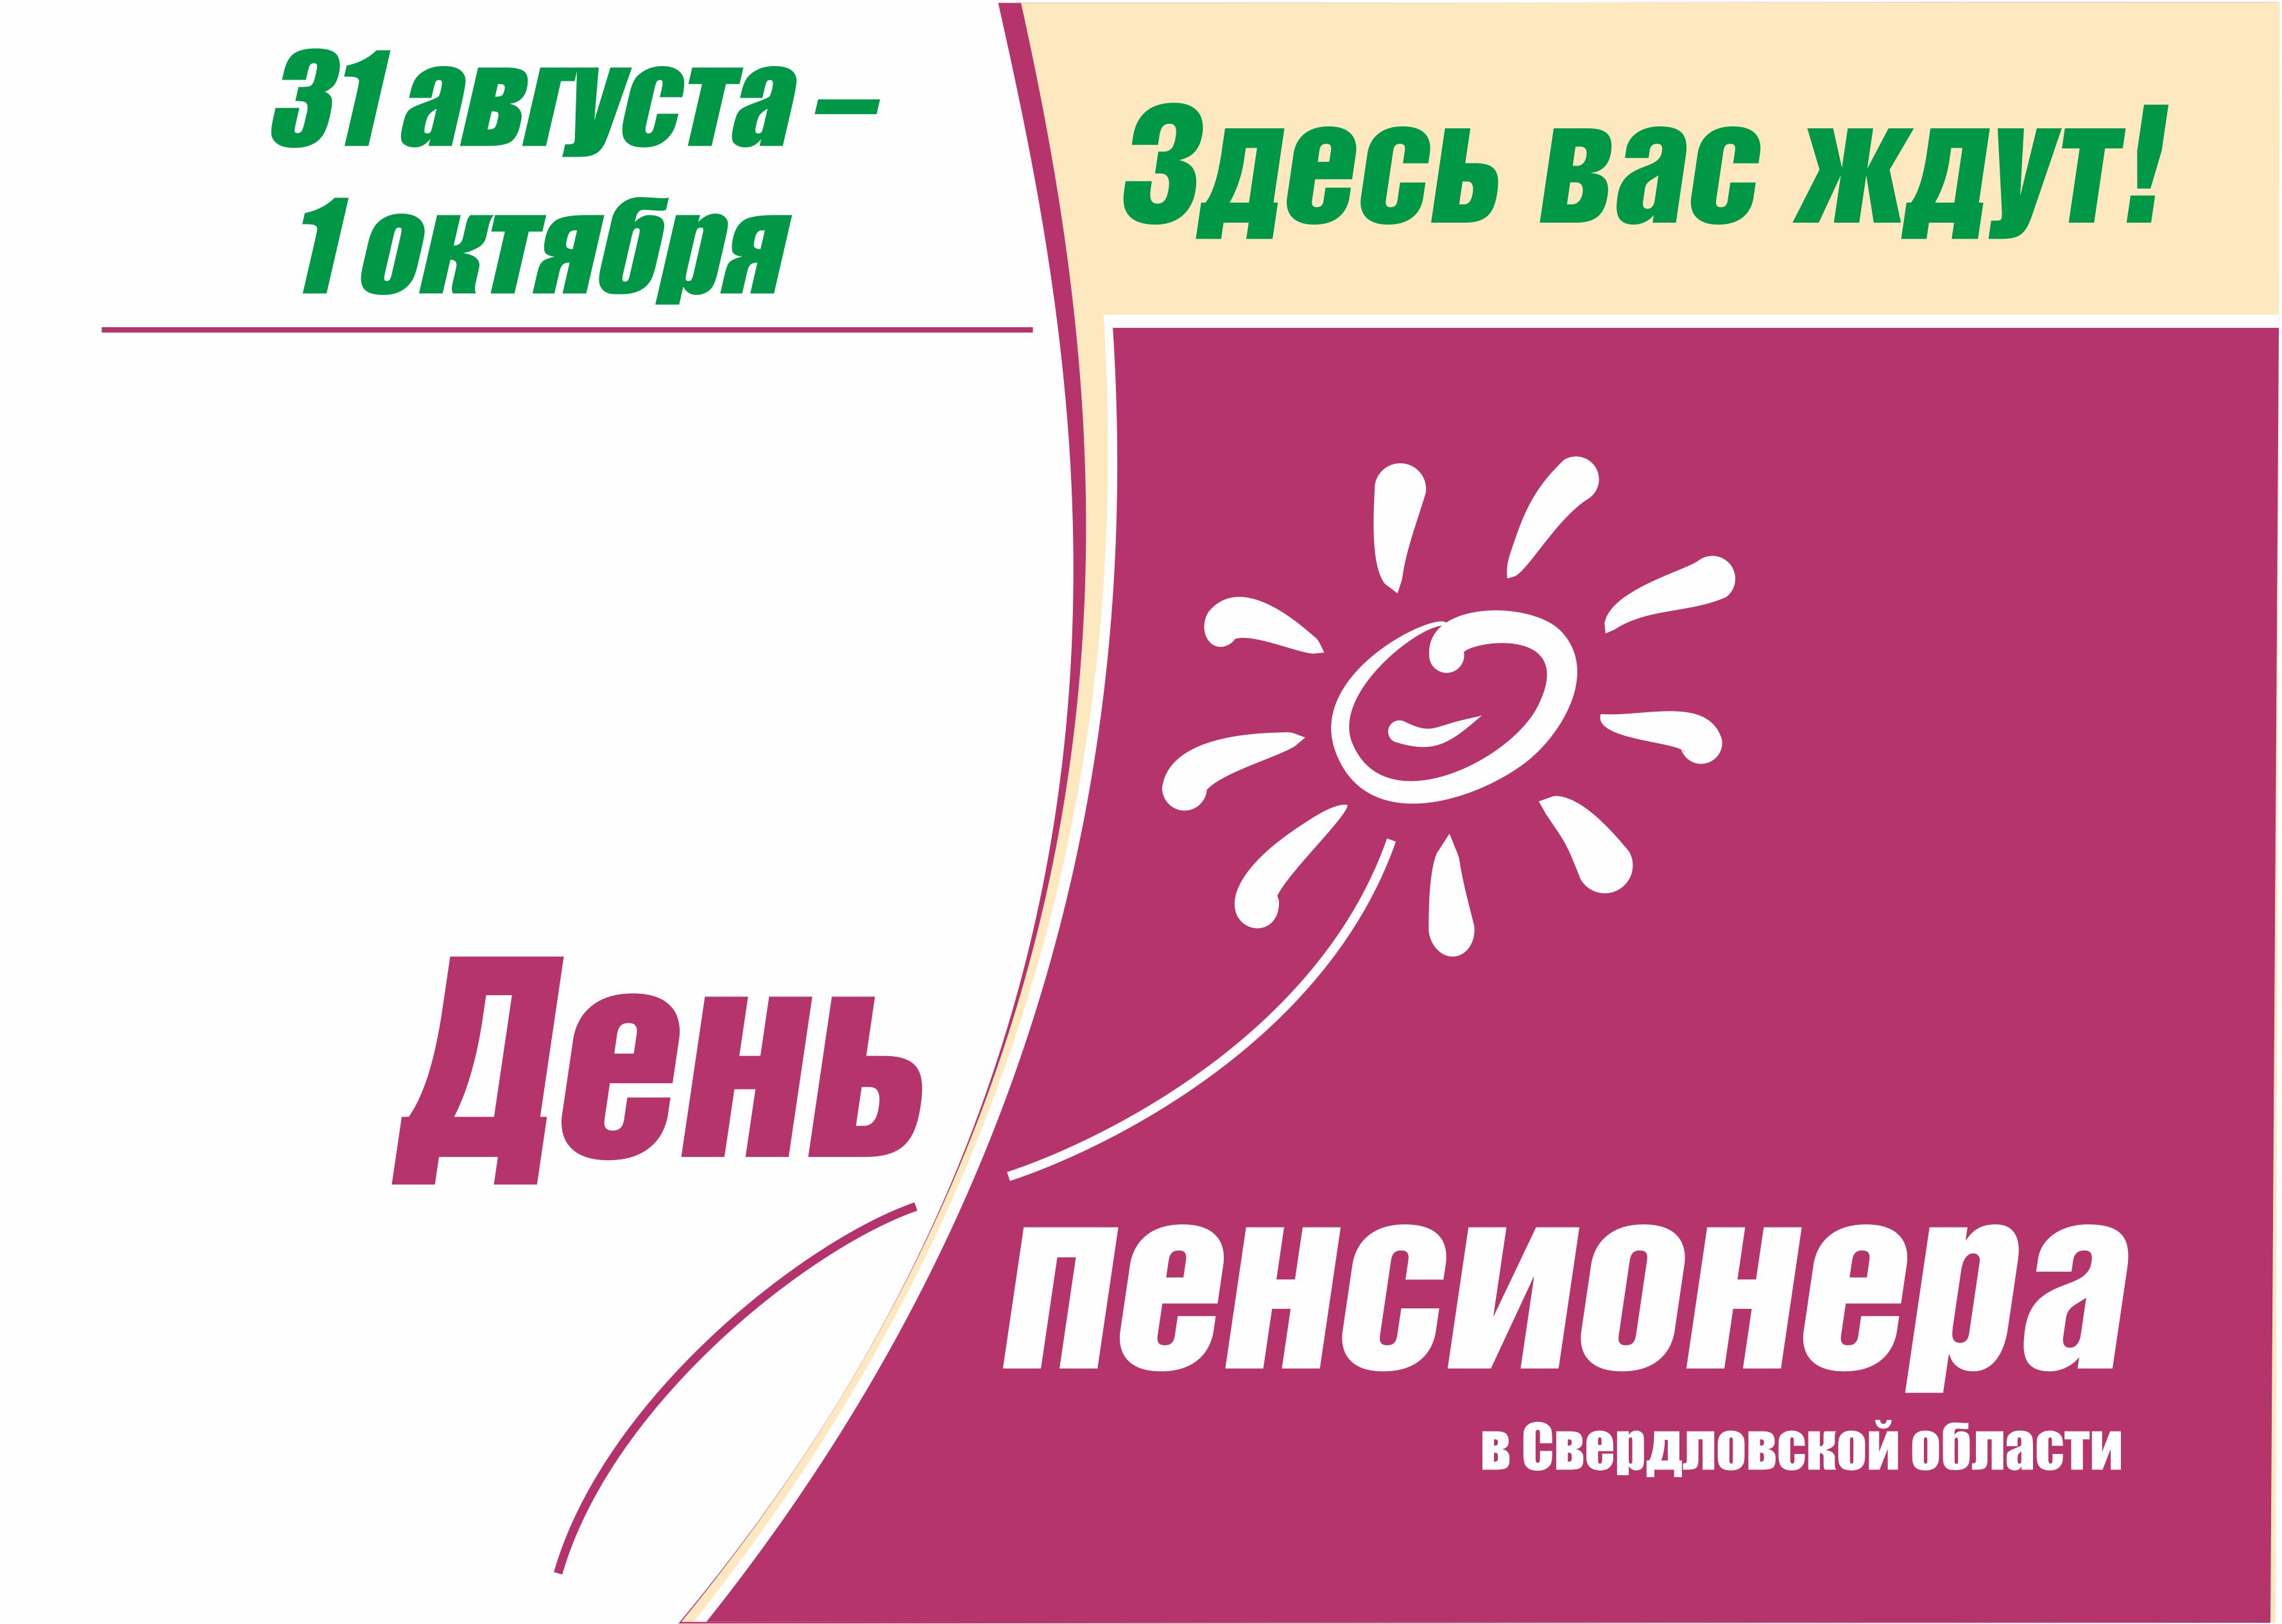 Den pensionera logo А4 2014 